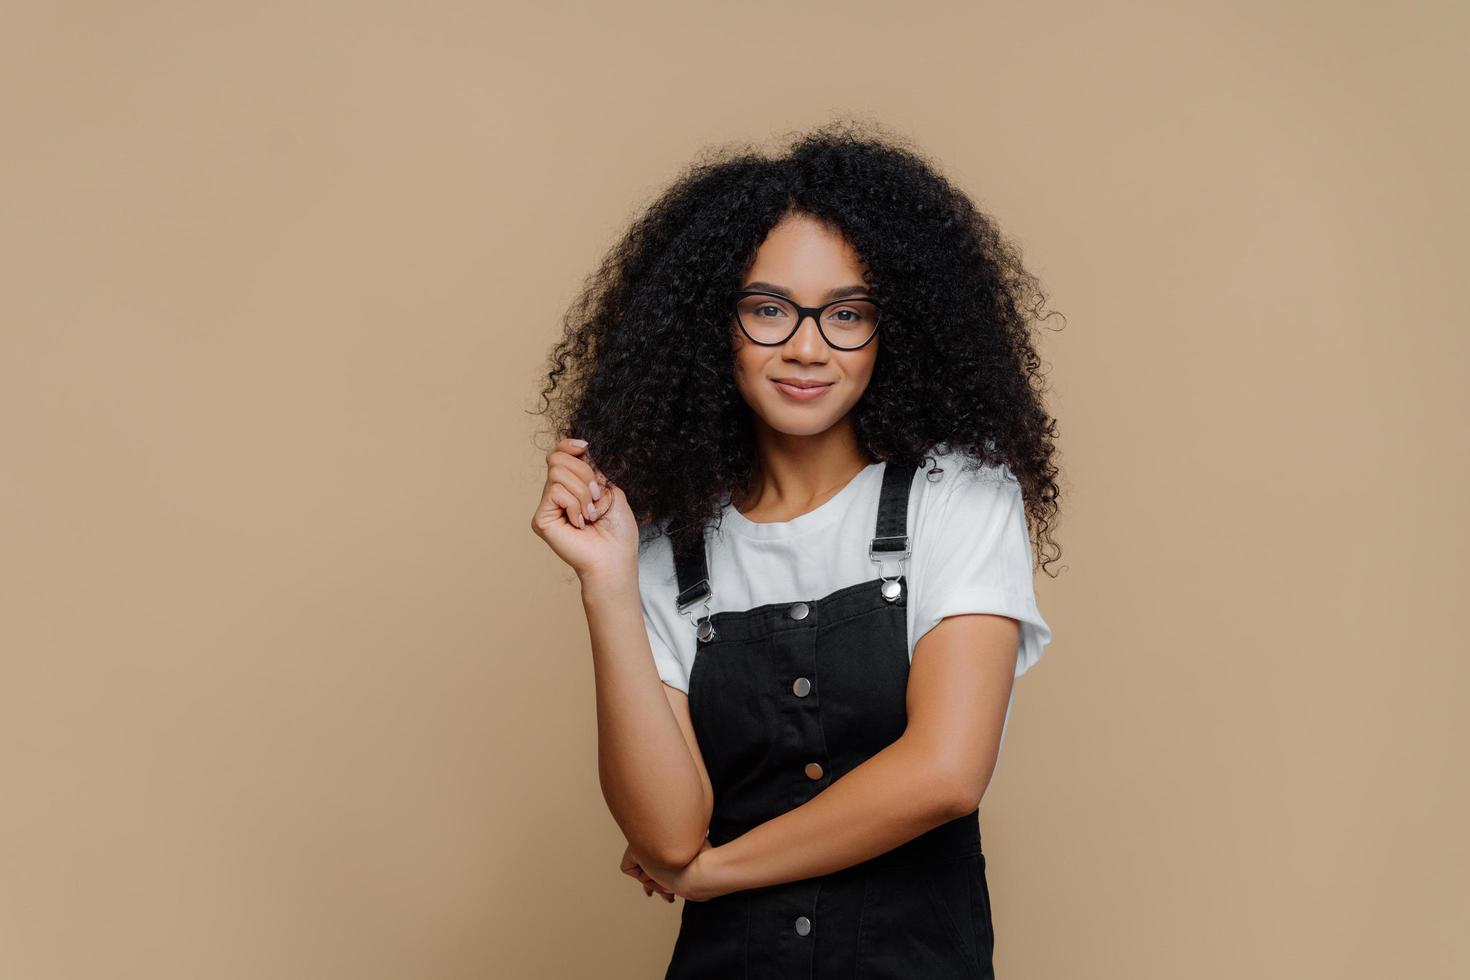 isolierte aufnahme einer angenehm aussehenden jungen afroamerikanerin berührt lockiges haar, hat eine buschige frisur, trägt eine optische brille, ein weißes t-shirt und einen schwarzen overall, posiert vor braunem studiohintergrund foto